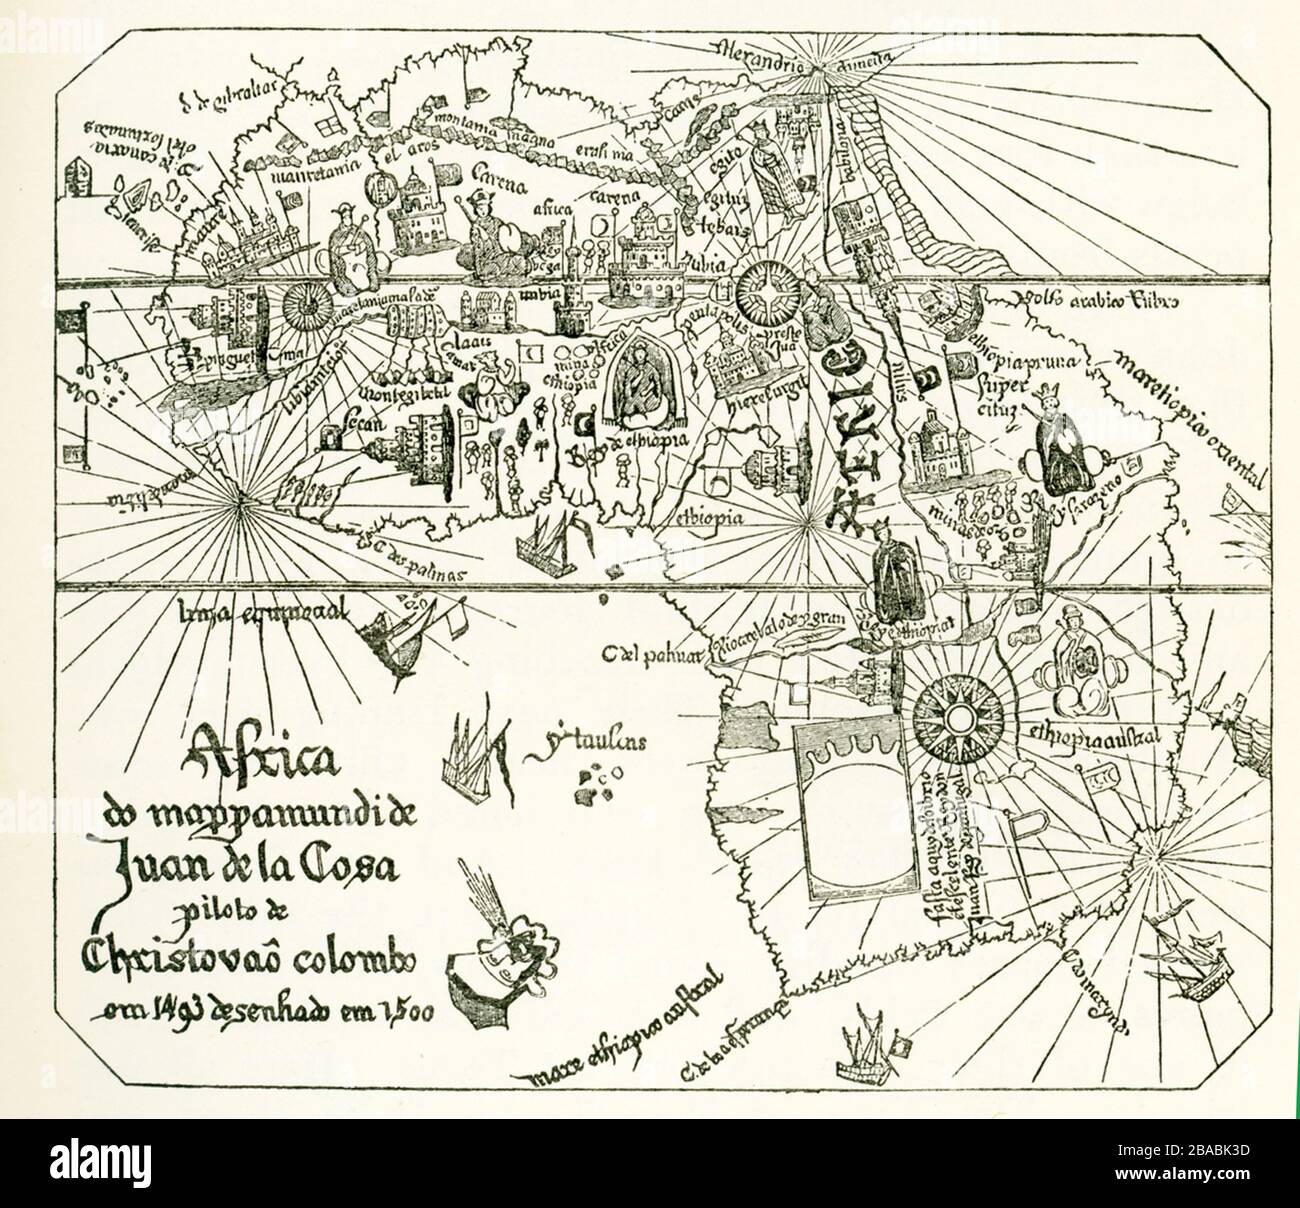 Nous avons montré ici comment l’Afrique était censée être façonnée après les expéditions de Vasco Da Gama. Cette carte est une section de la carte de Juan de la Cosa en 1500. Juan de la Cosa était un navigateur castillan et cartographe, connu pour la conception de la première carte du monde européen qui a incorporé les territoires des Amériques qui ont été découverts au XVe siècle. Vasco da Gama était un explorateur portugais et le premier européen à atteindre l'Inde par la mer. Son premier voyage en Inde a été le premier à relier l'Europe et l'Asie par une route maritime, reliant l'Atlantique et les océans indiens et donc l'Ouest et l'Orie Banque D'Images